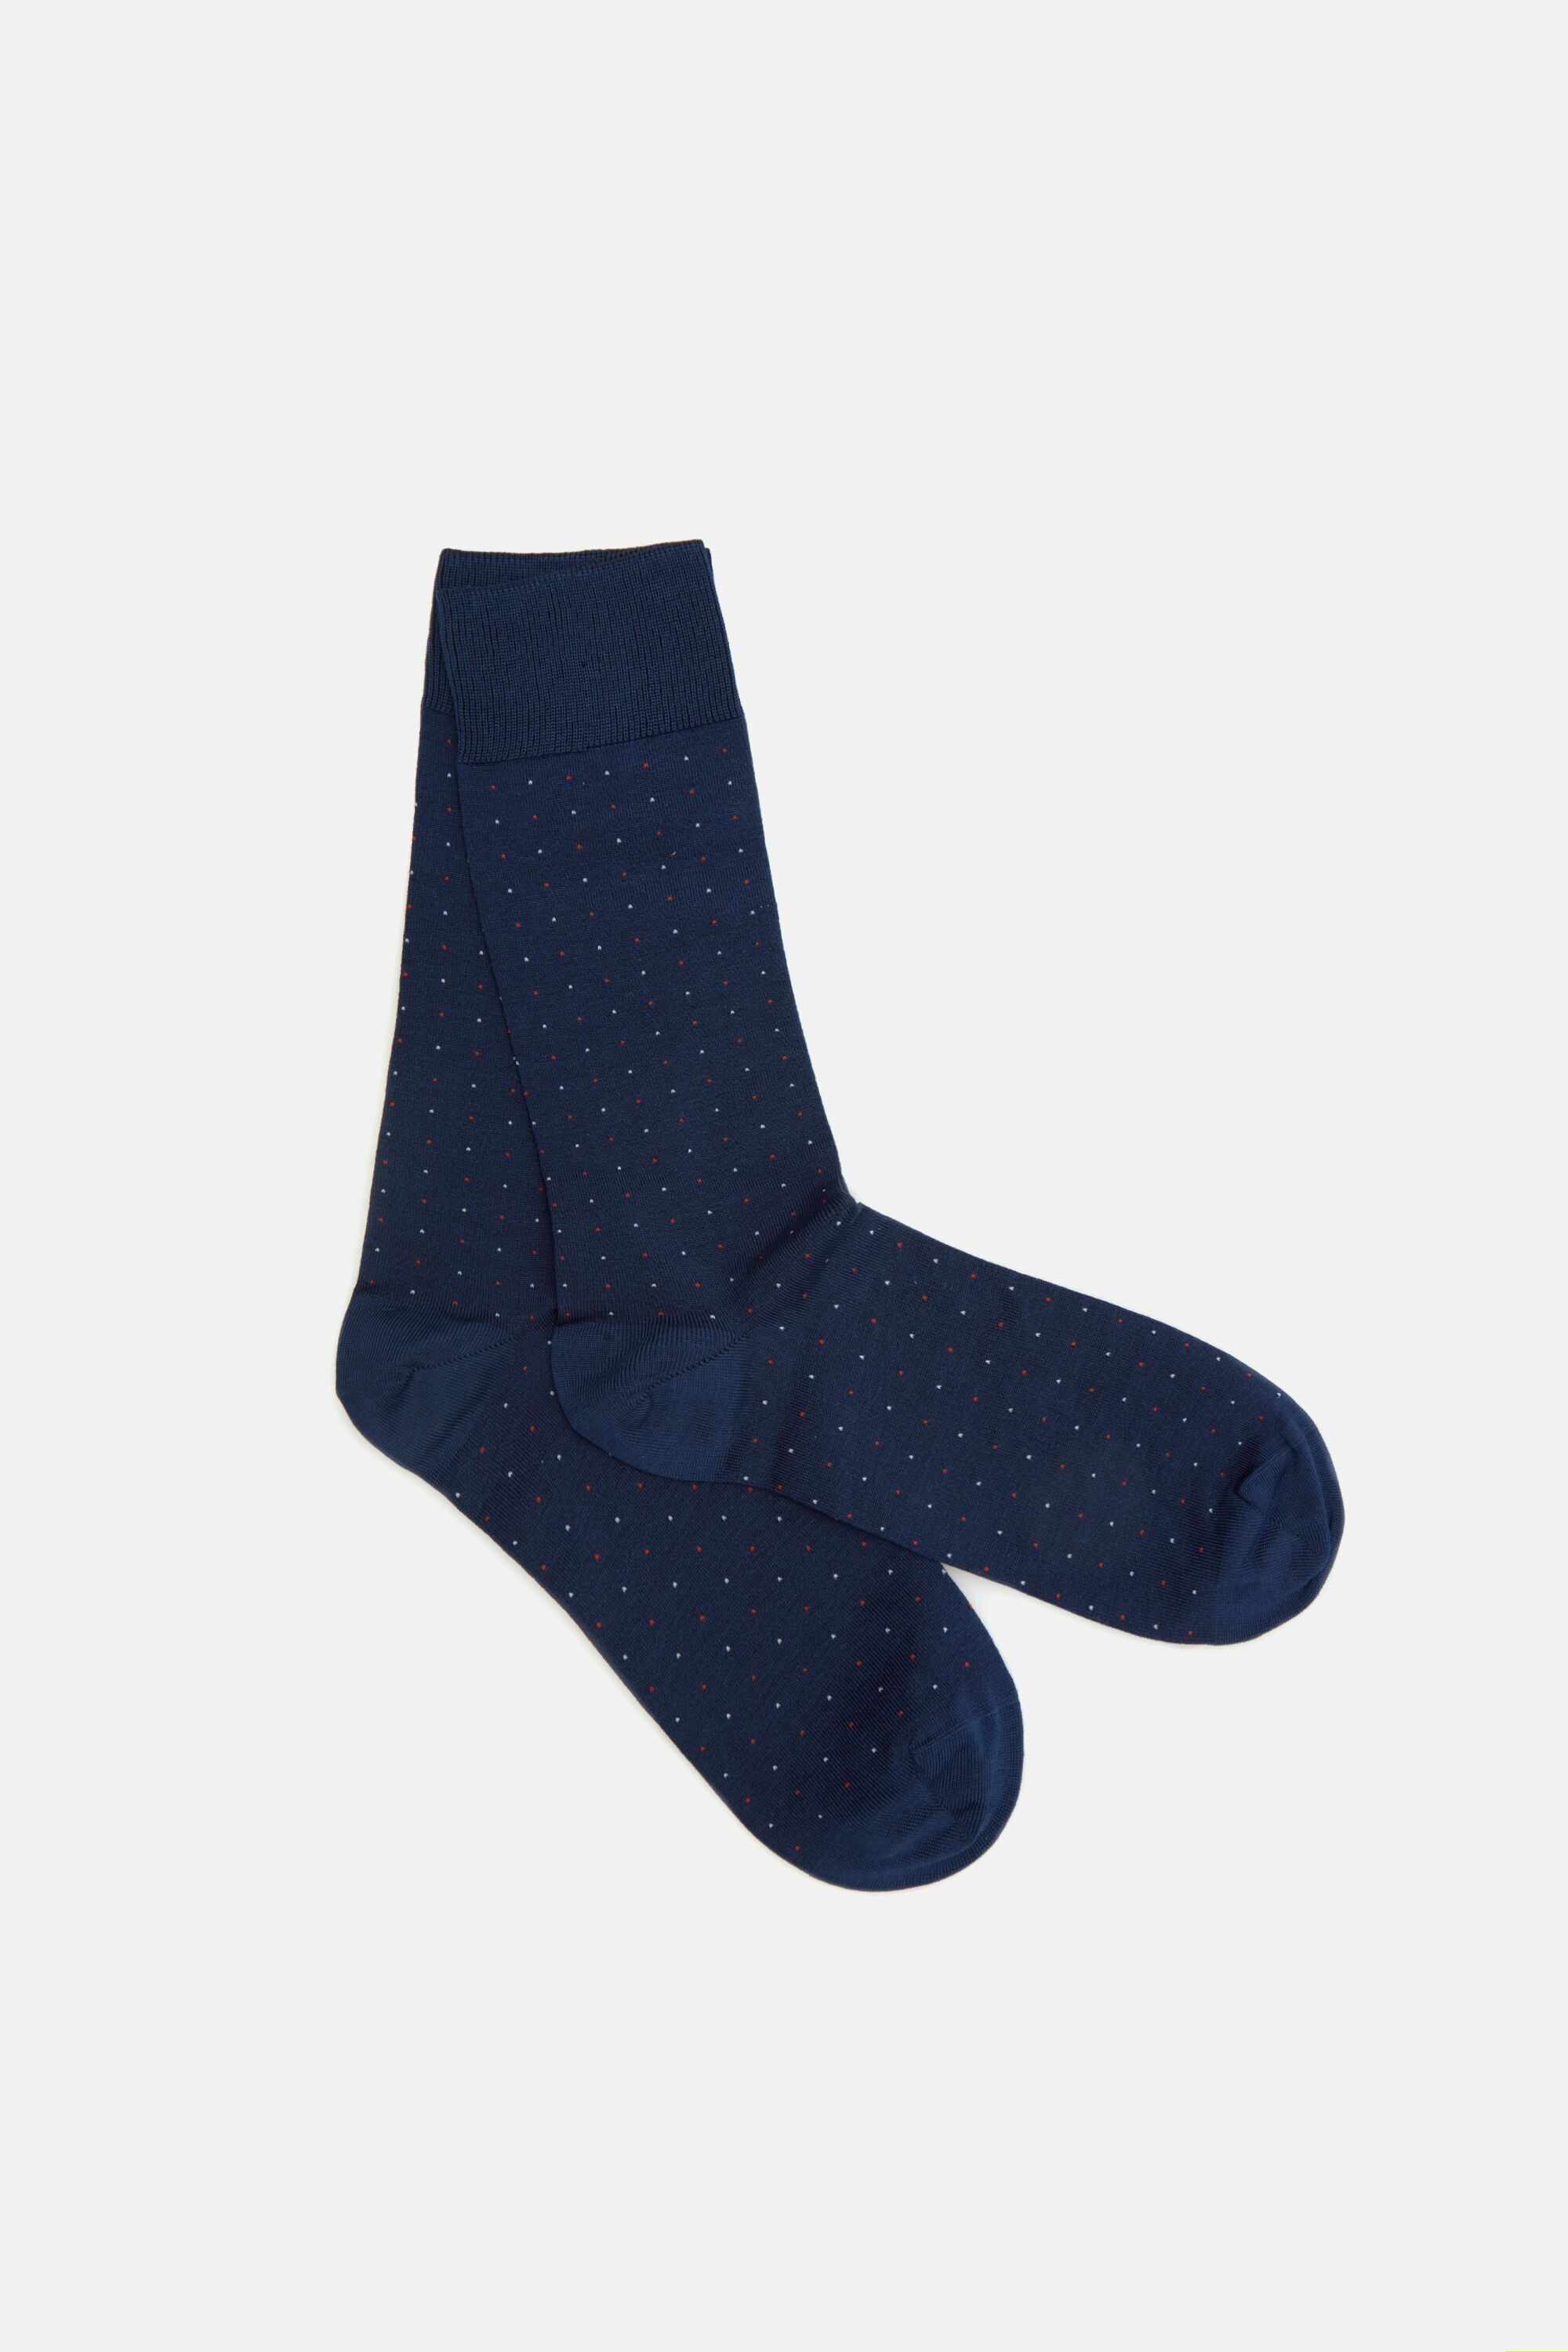 Polka dot knit socks